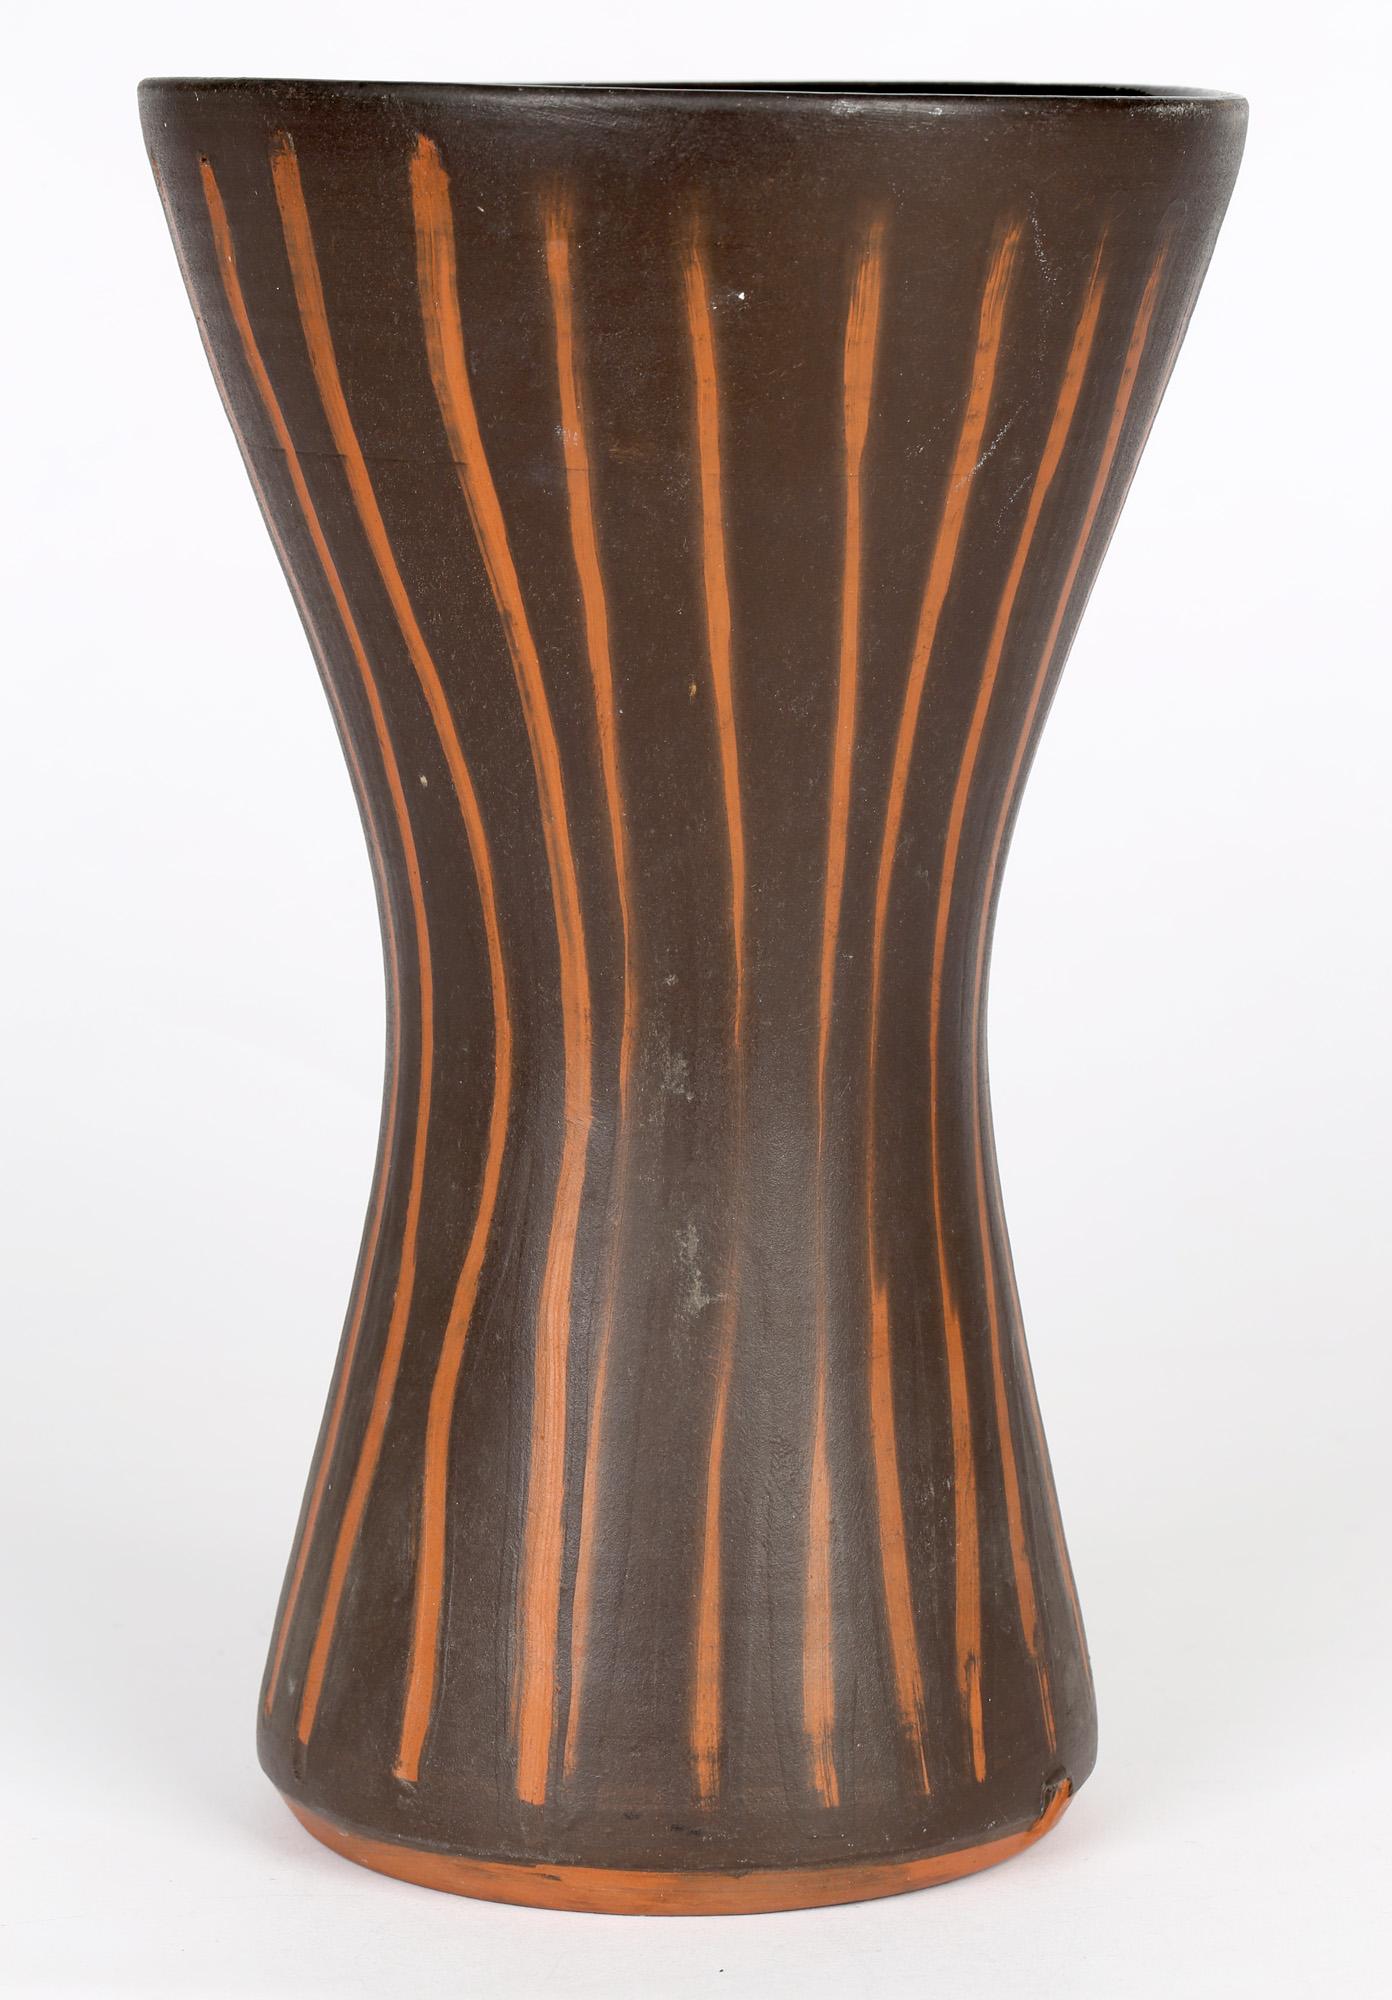 Eine schöne und ungewöhnliche große Studiotöpferei-Vase mit spitz zulaufender, taillierter Form und kontrastierenden vertikalen Streifen auf dunkelbraunem Grund von David Leach (1911-2005), die wahrscheinlich in der Anfangszeit von Lowerdown um 1960